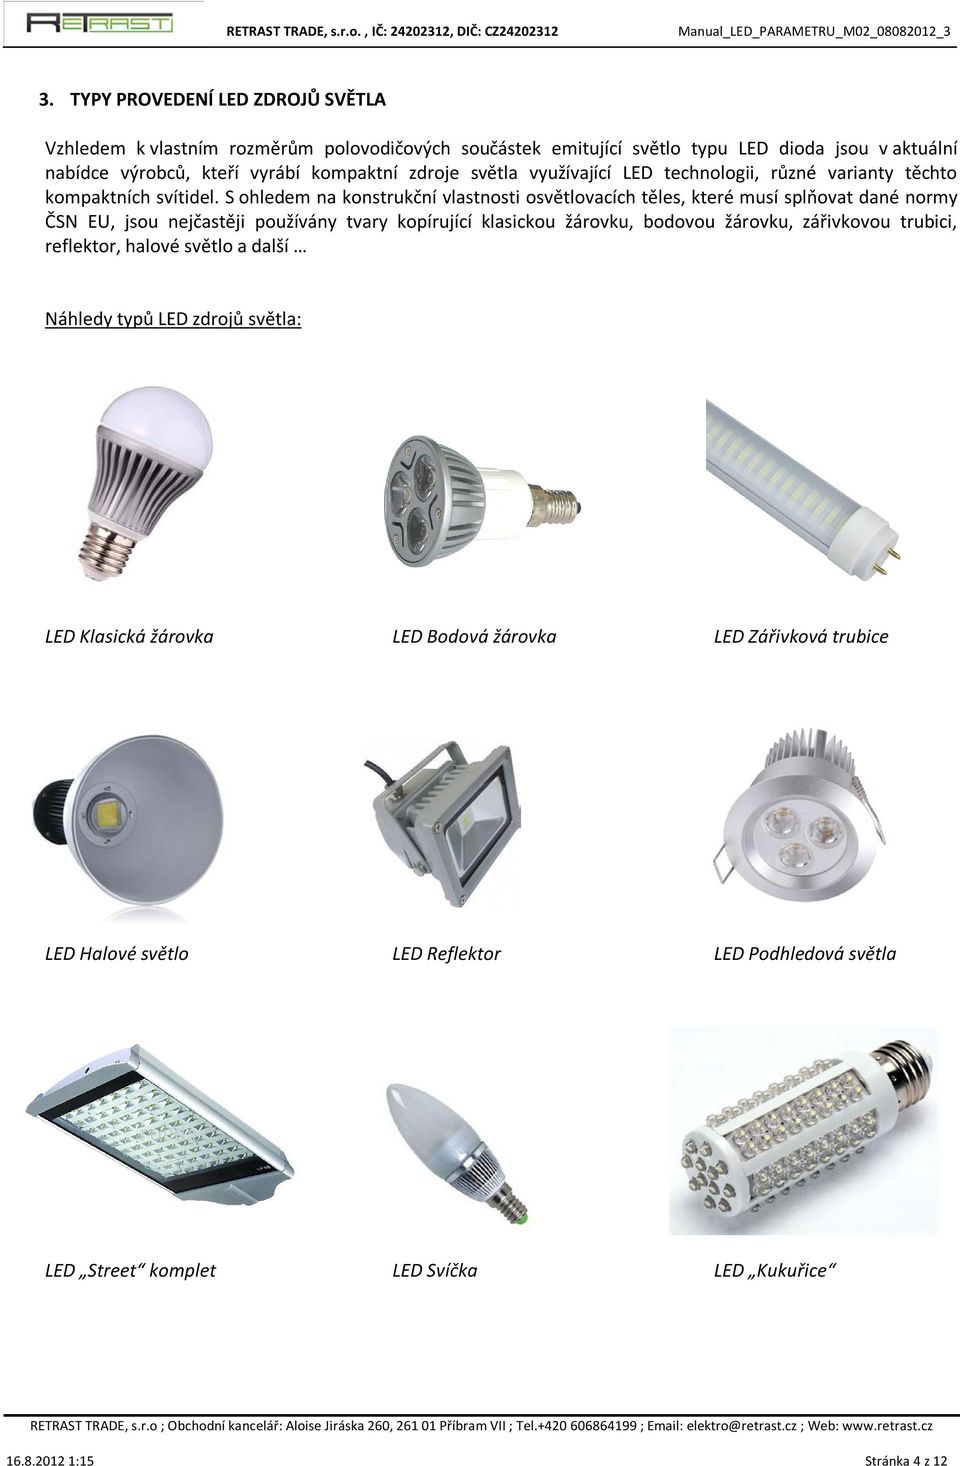 S ohledem na konstrukční vlastnosti osvětlovacích těles, které musí splňovat dané normy ČSN EU, jsou nejčastěji používány tvary kopírující klasickou žárovku, bodovou žárovku,